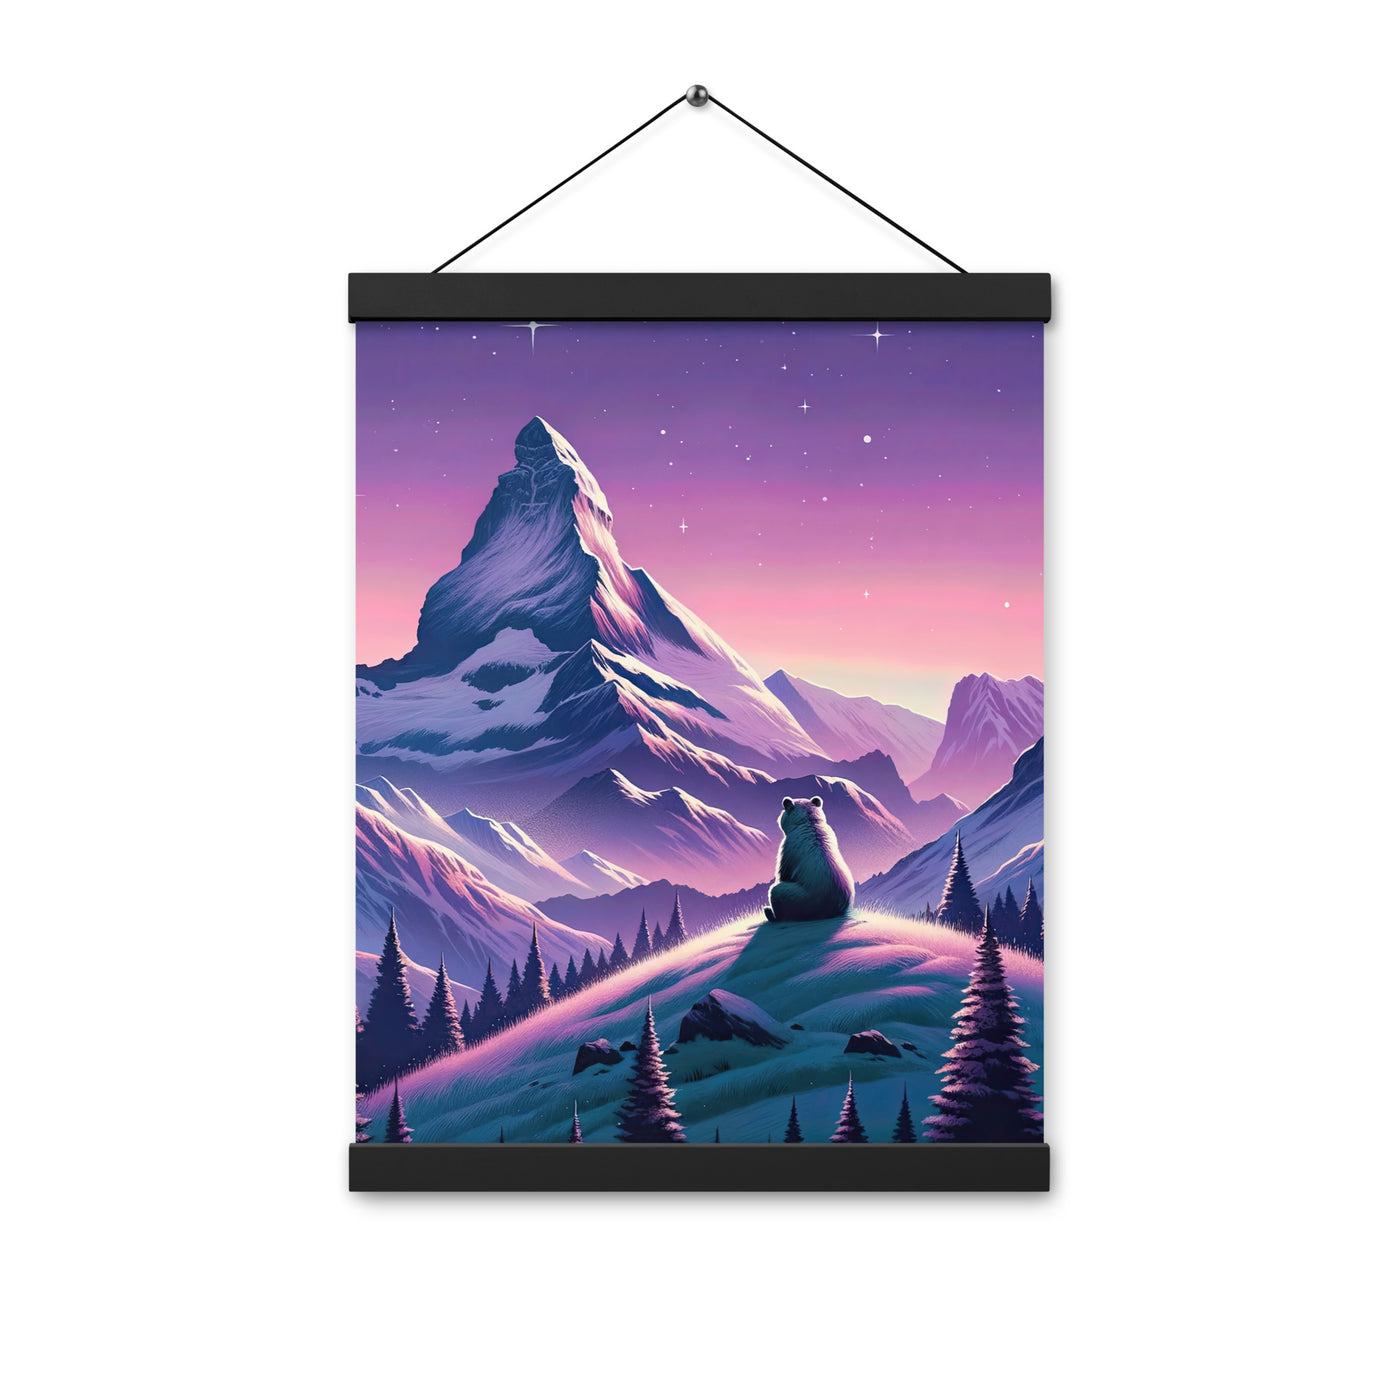 Bezaubernder Alpenabend mit Bär, lavendel-rosafarbener Himmel (AN) - Premium Poster mit Aufhängung xxx yyy zzz 30.5 x 40.6 cm